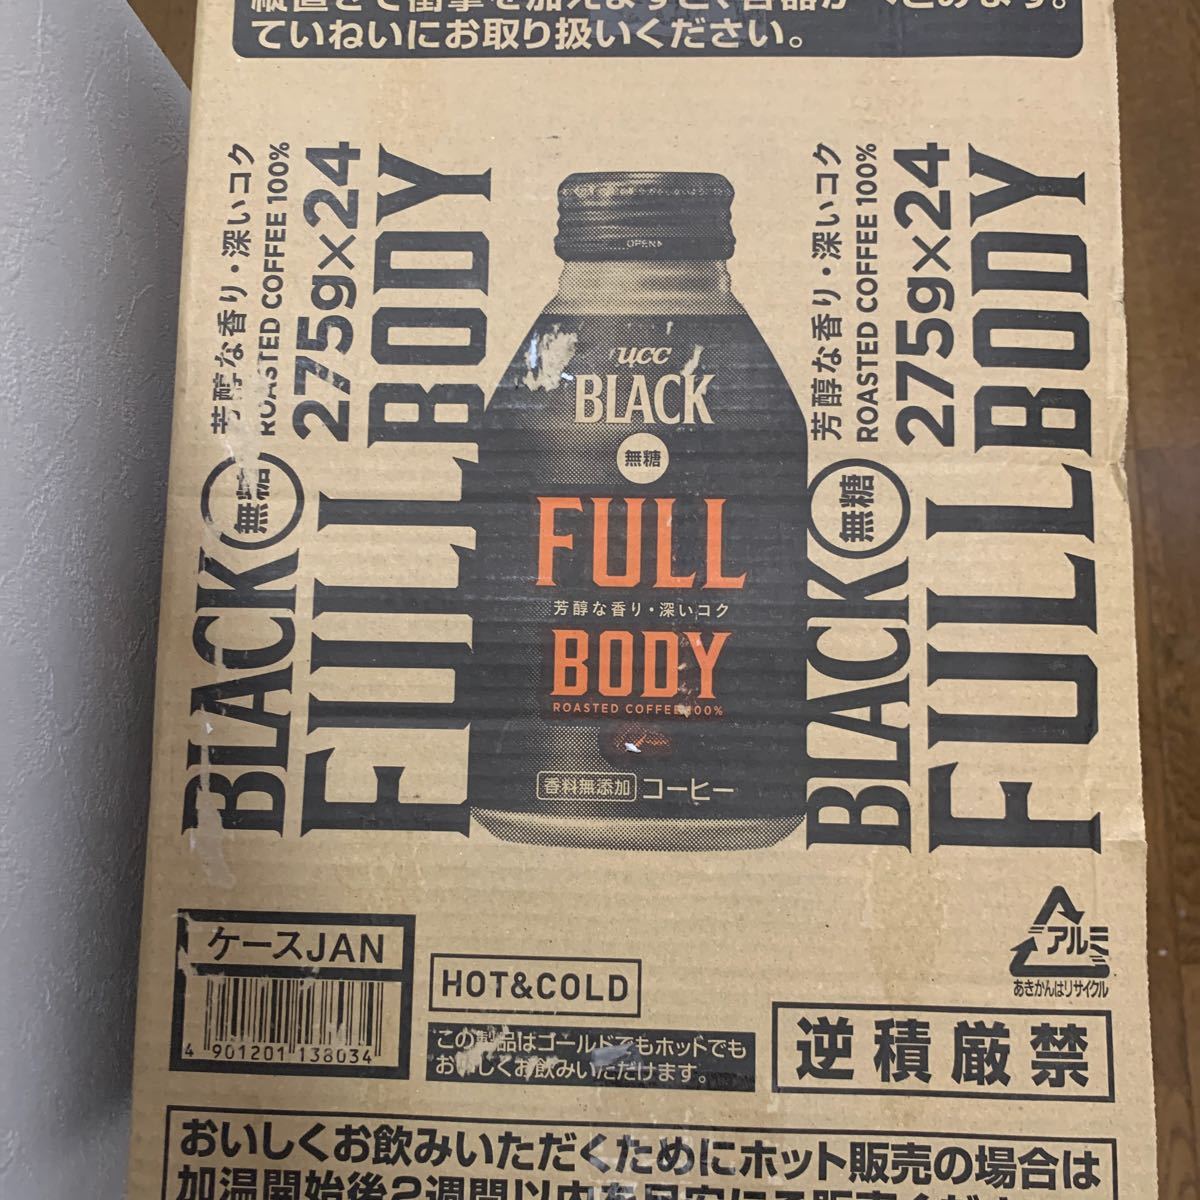 【賞味期限2022/4/1】UCC BLACK無糖 Full Body 缶コーヒー 275g ×24本